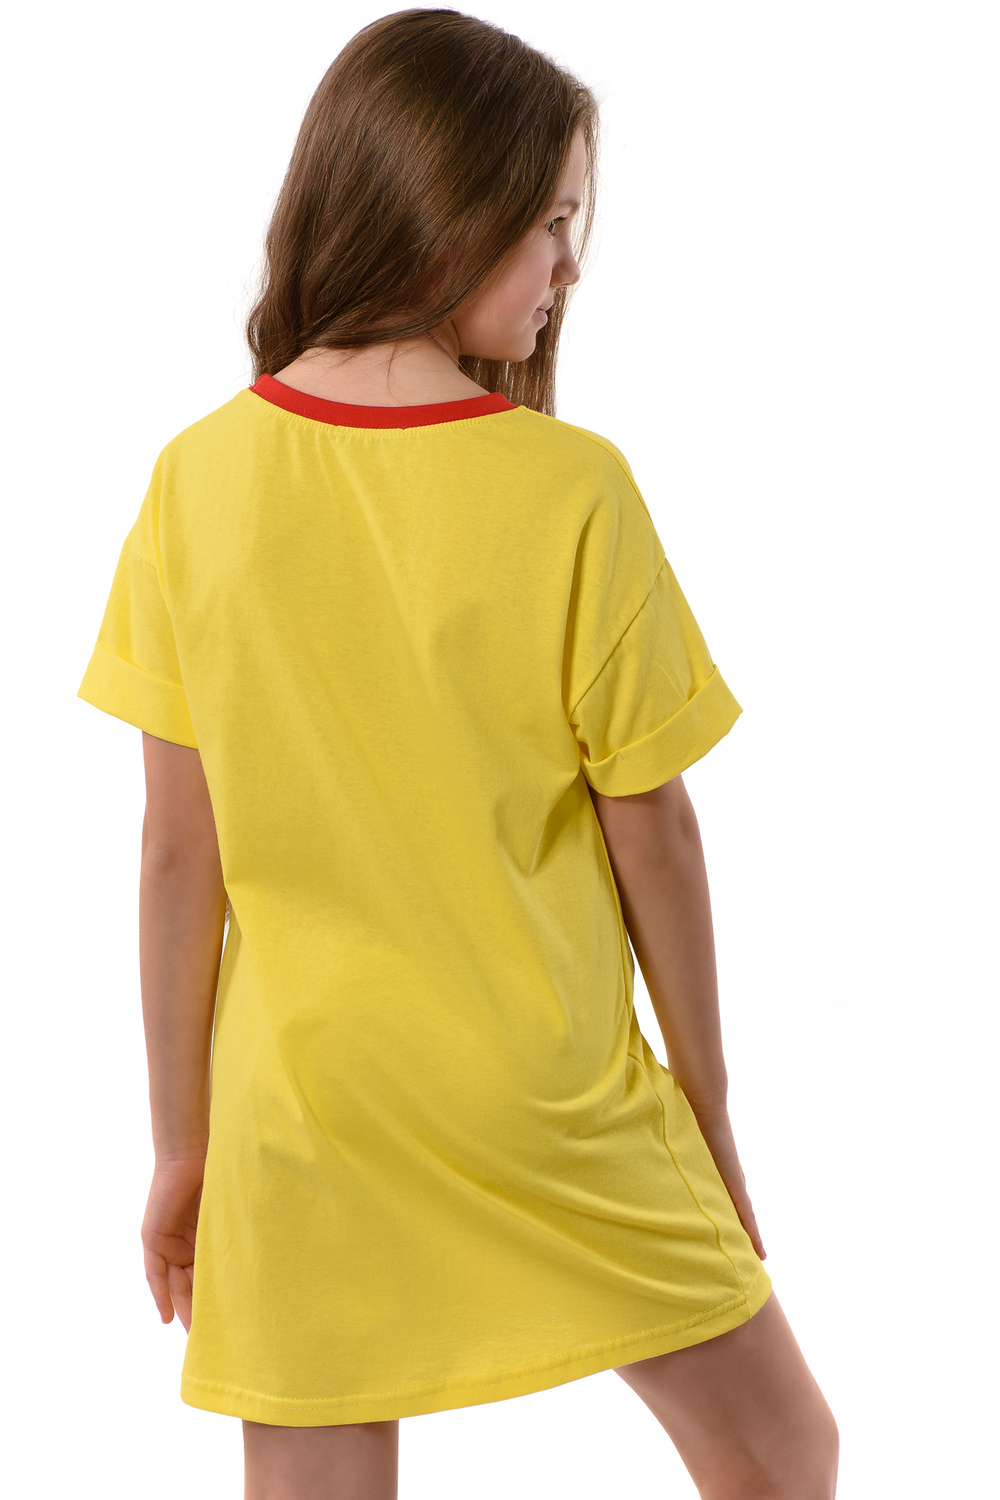 Фото товара 22655, желтая туника для девочки с принтом клубника